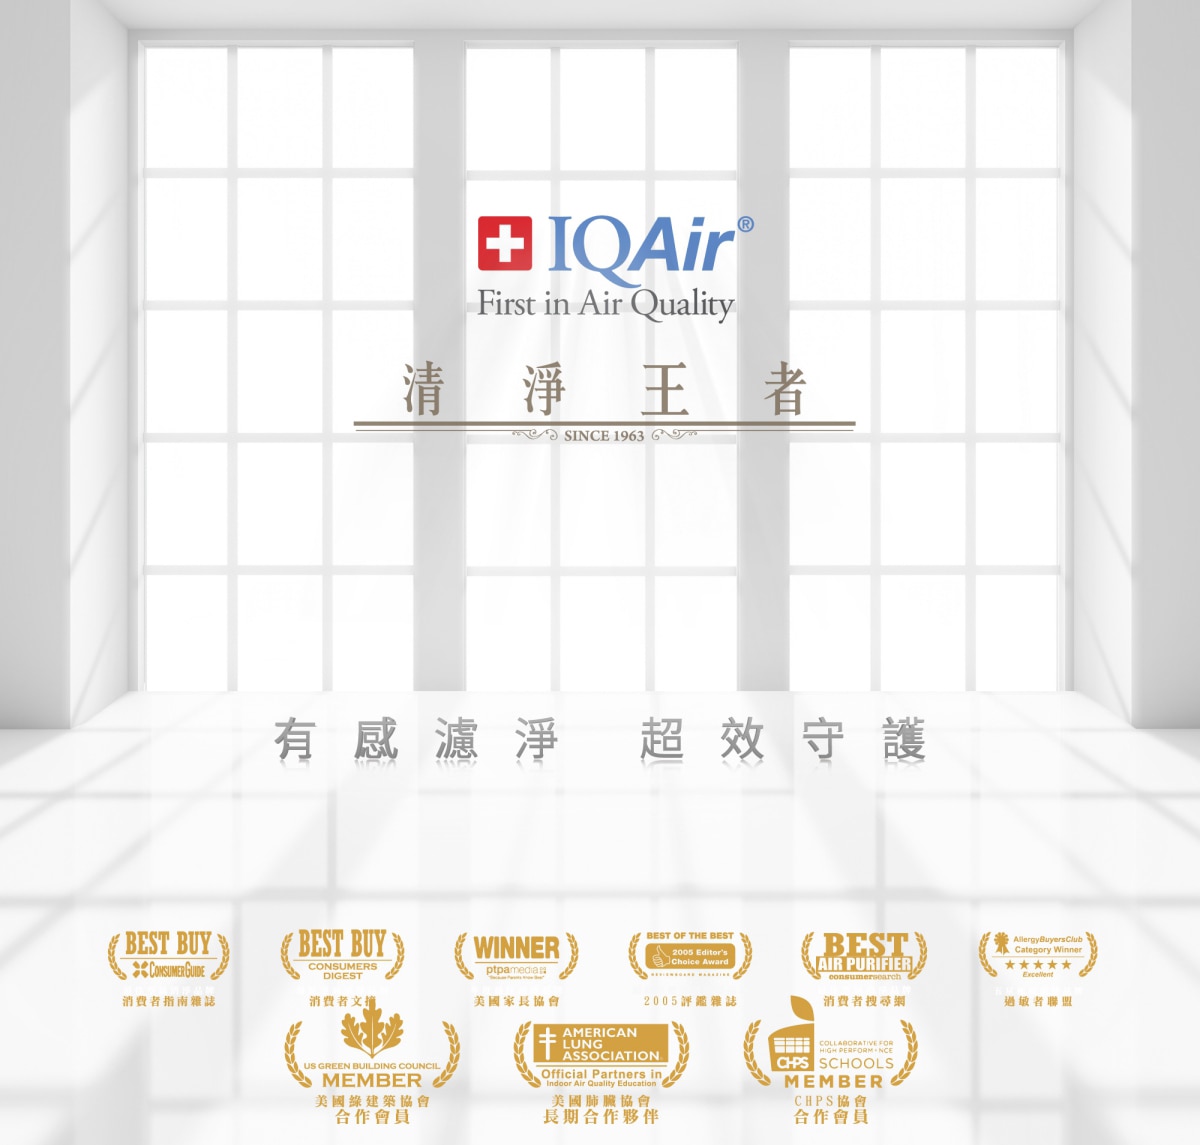 IQAir為清淨王者，產品的空氣淨化系統讓你有感濾淨，超效守護，並為多個協會的長期合作夥伴與受到多種認證。